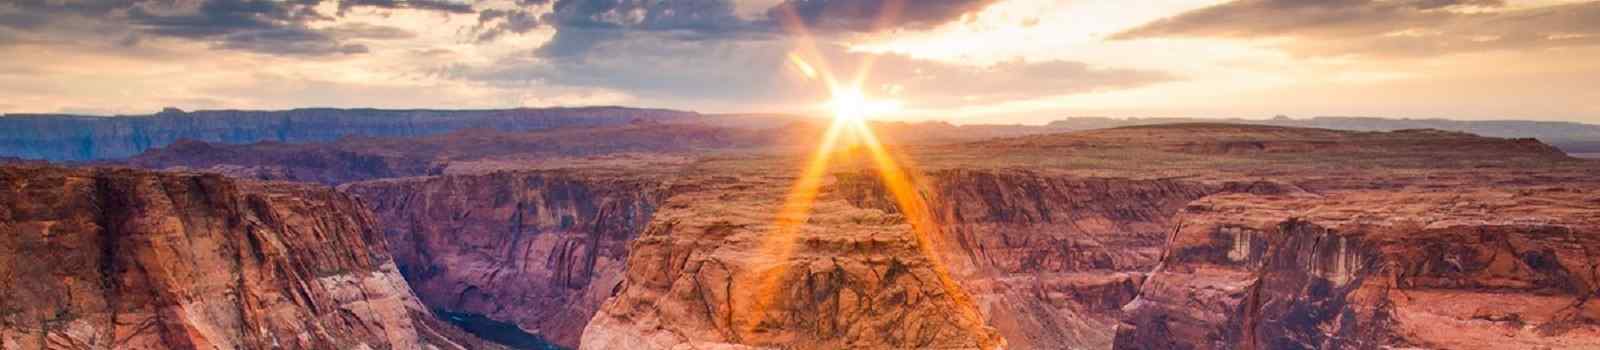 AMERIKAS-NATIONALPARKS -Grand Canyon Horseshoe Bend 157123715